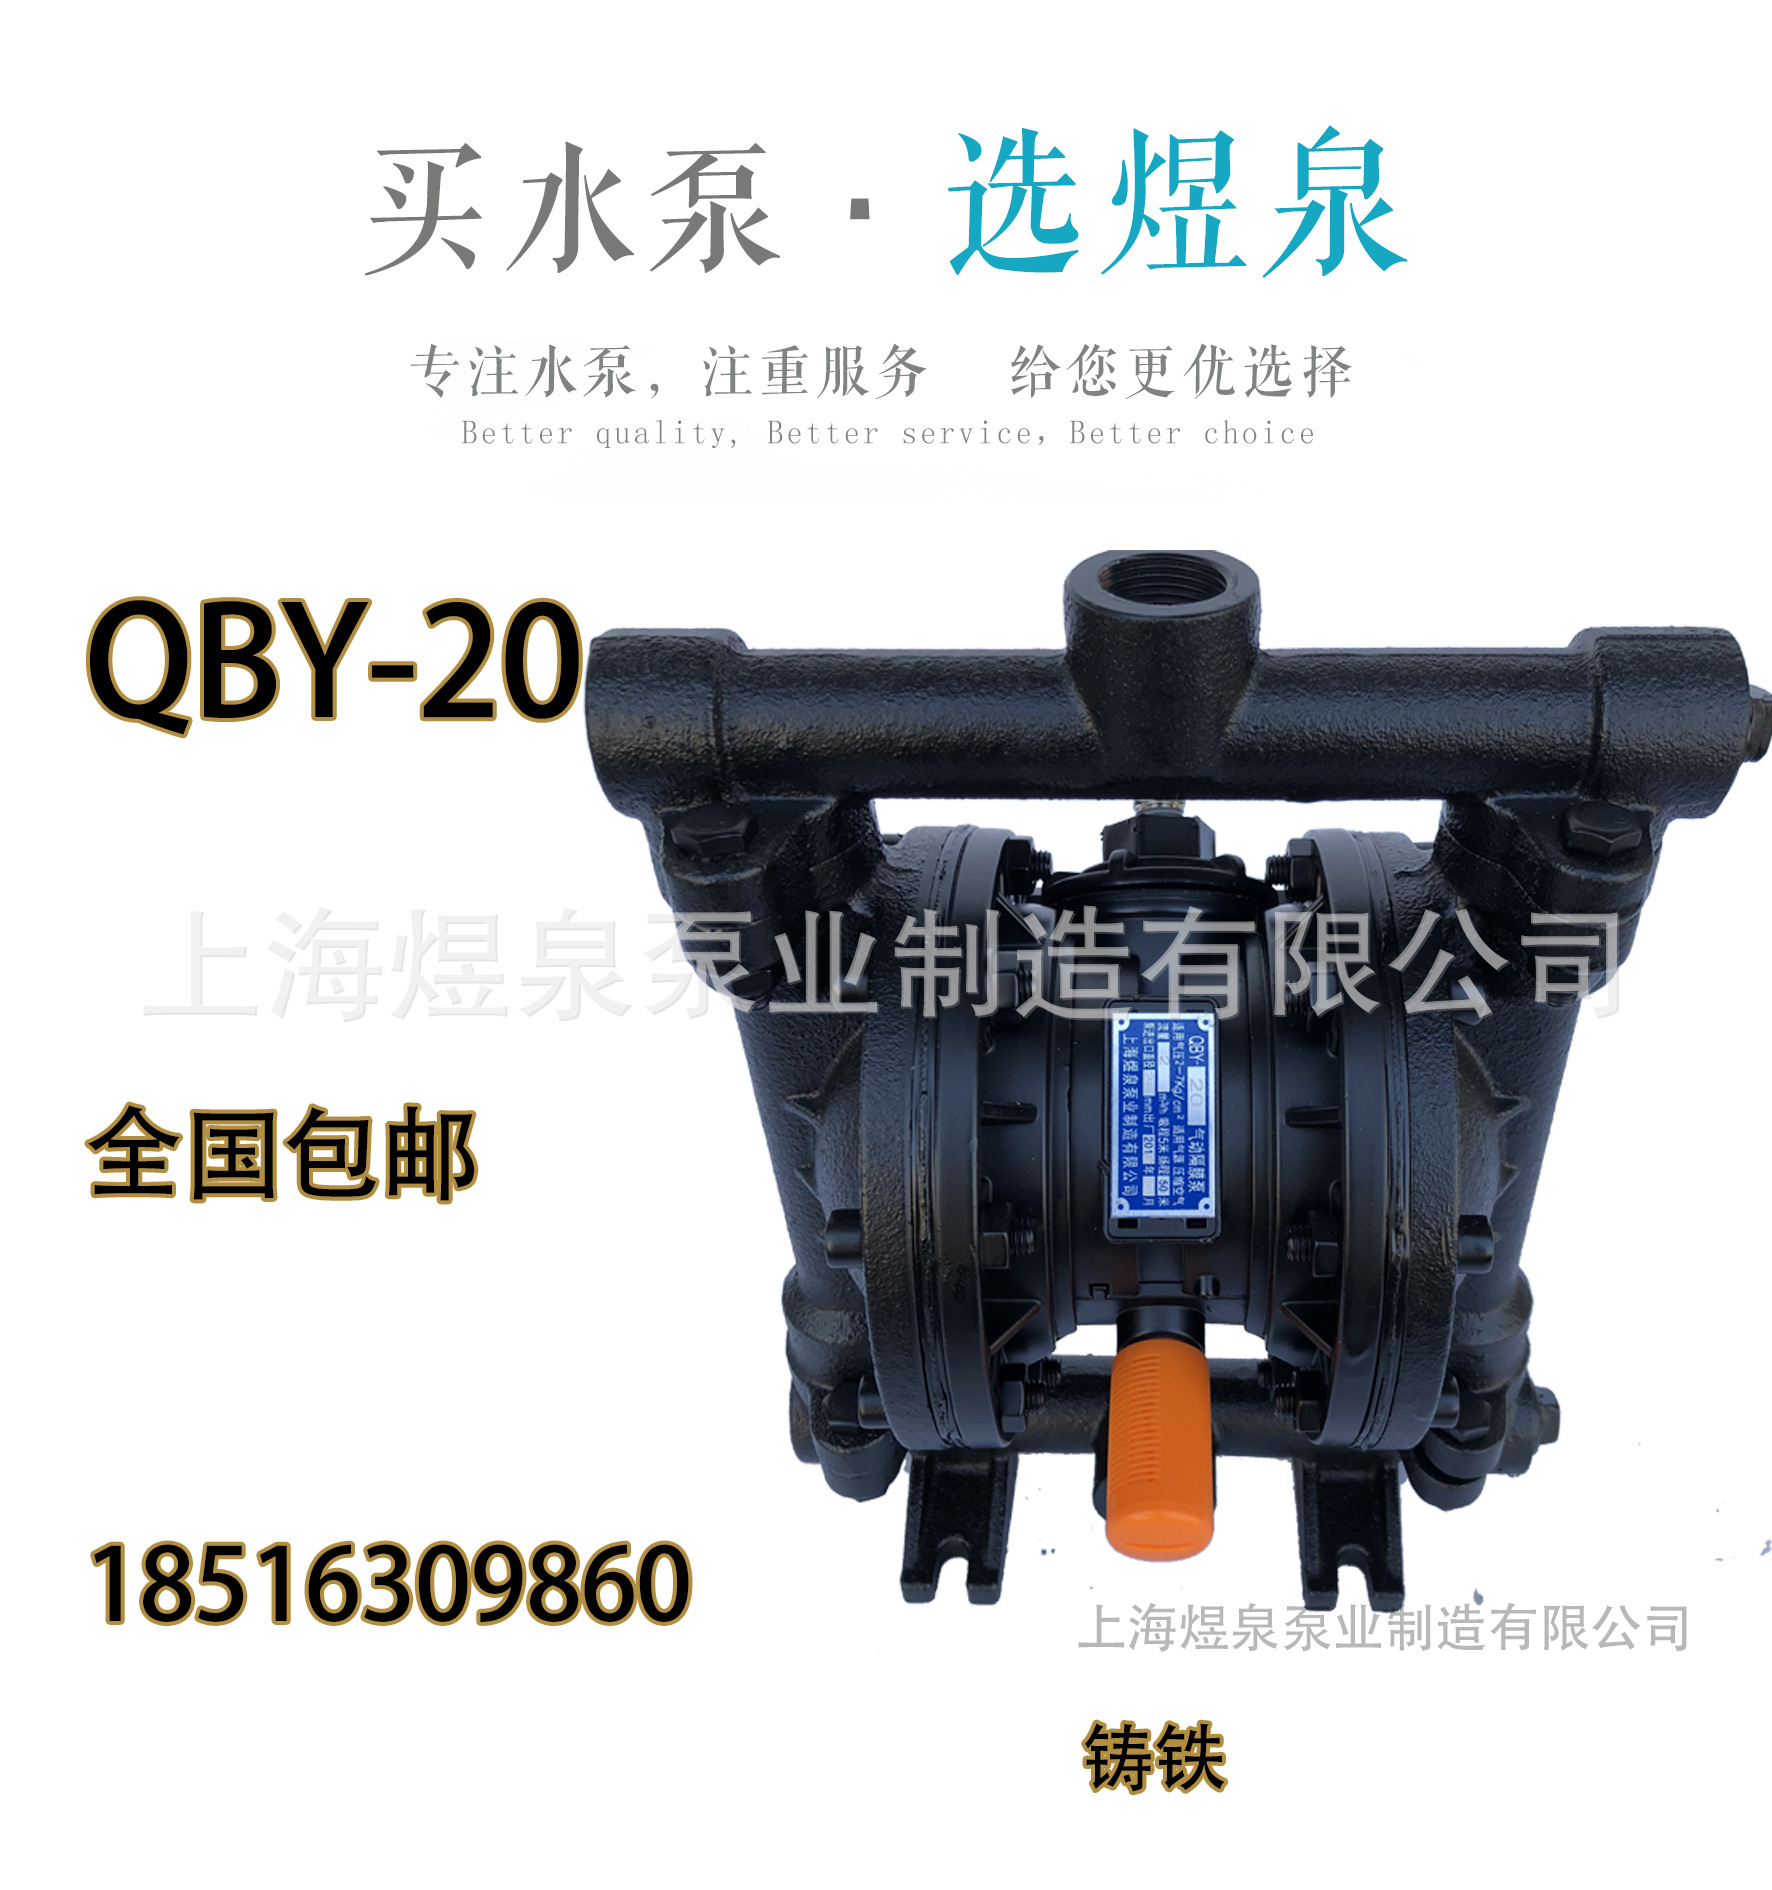 QBY-20 主图 铸铁.jpg